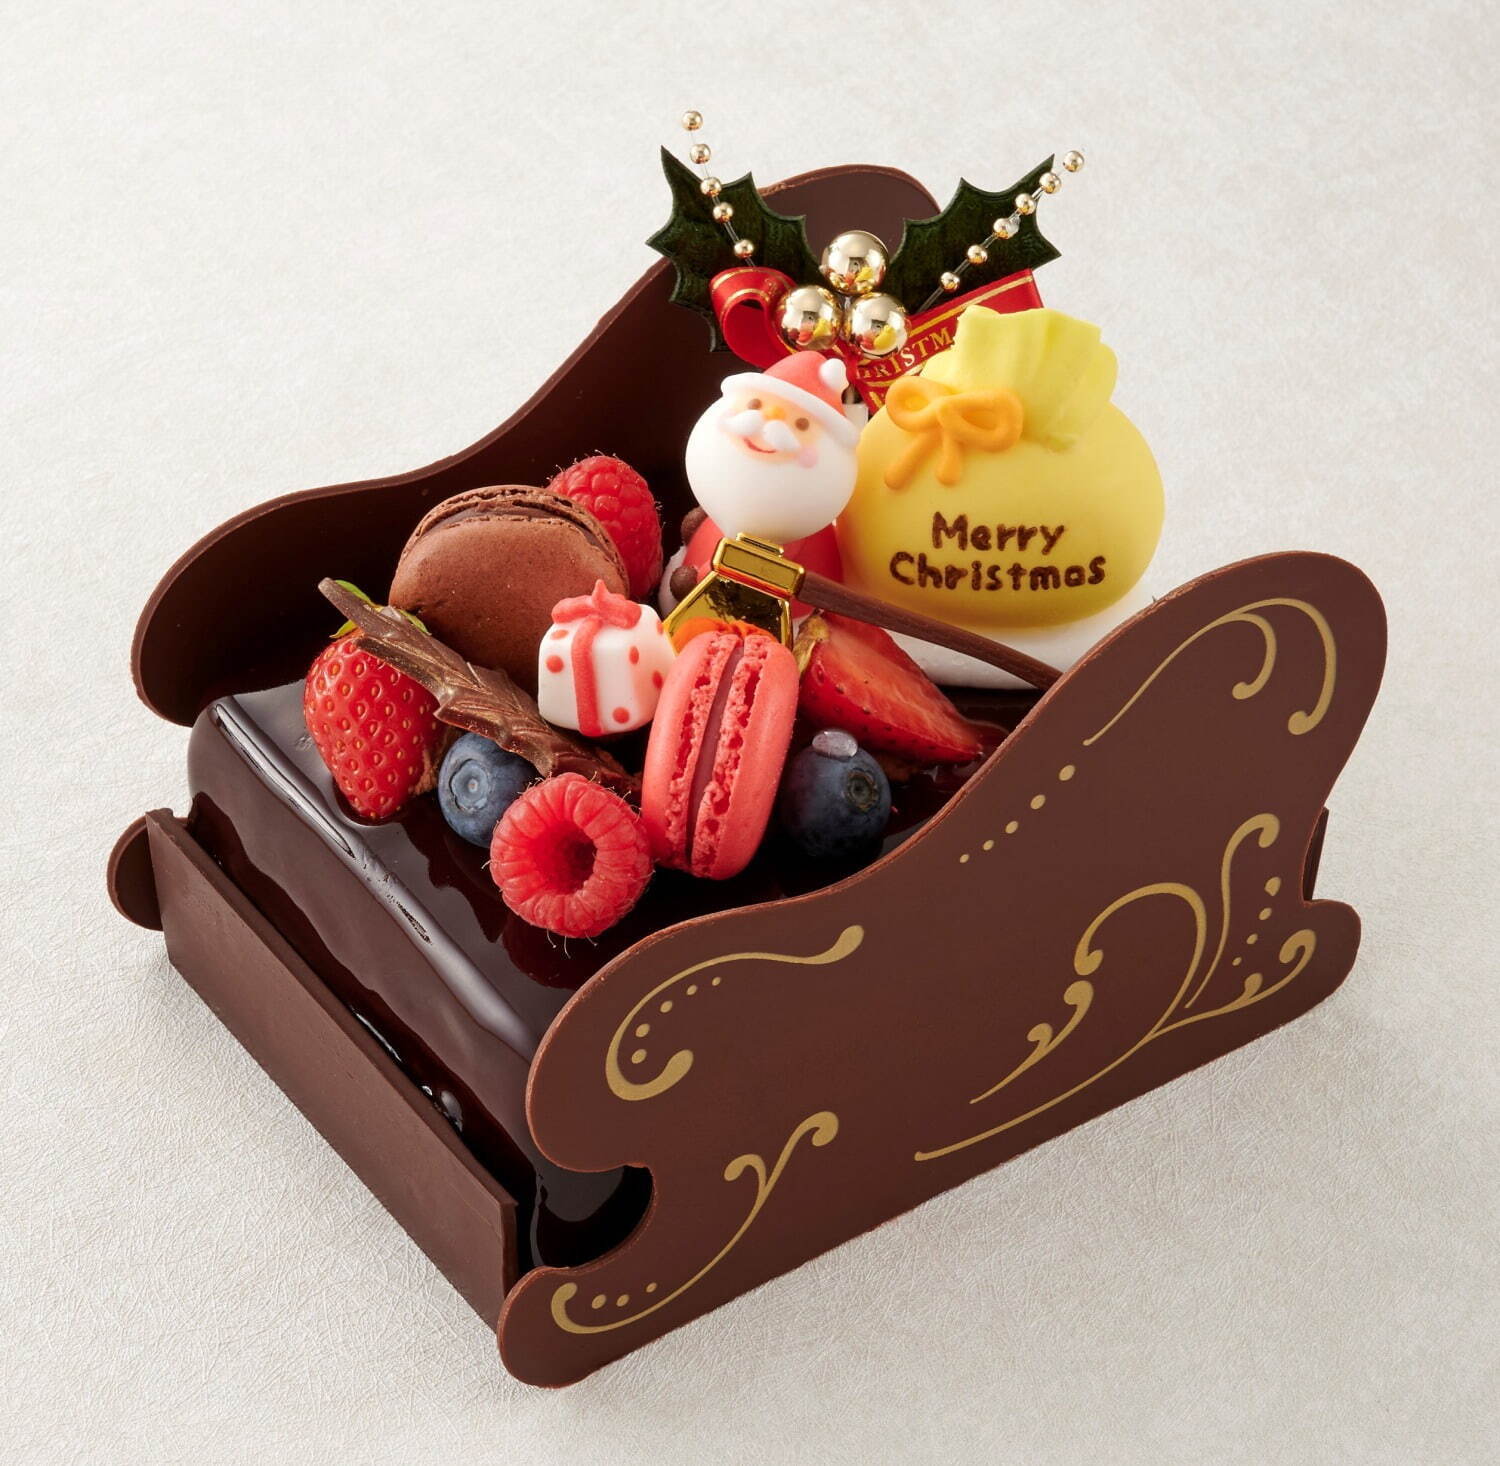 〈新宿高島屋〉ソリに乗ったサンタクロースの限定チョコレートケーキ